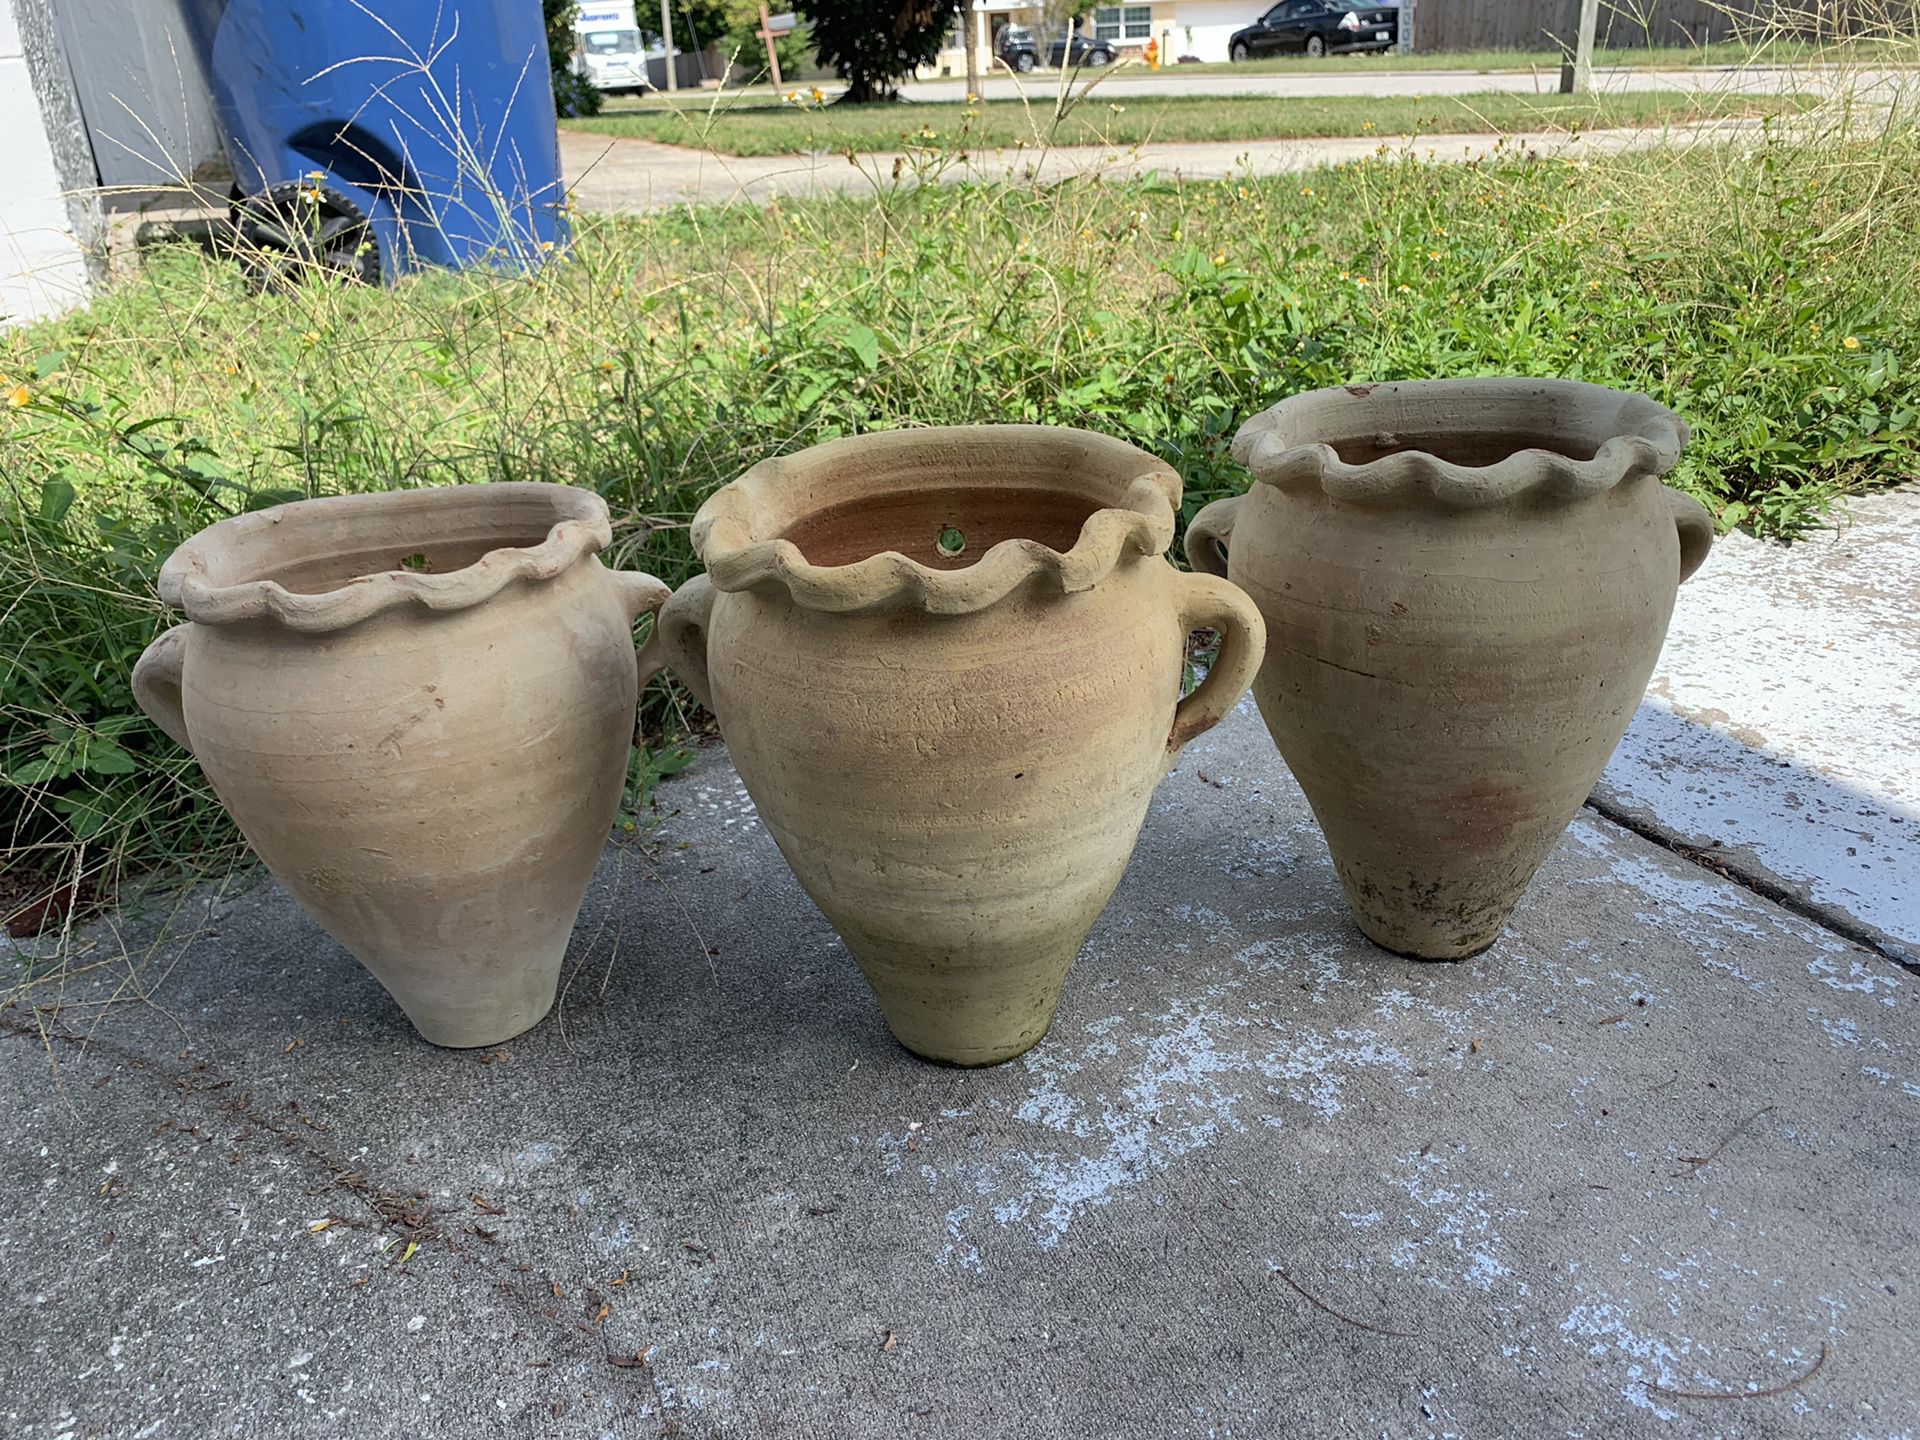 Large pots